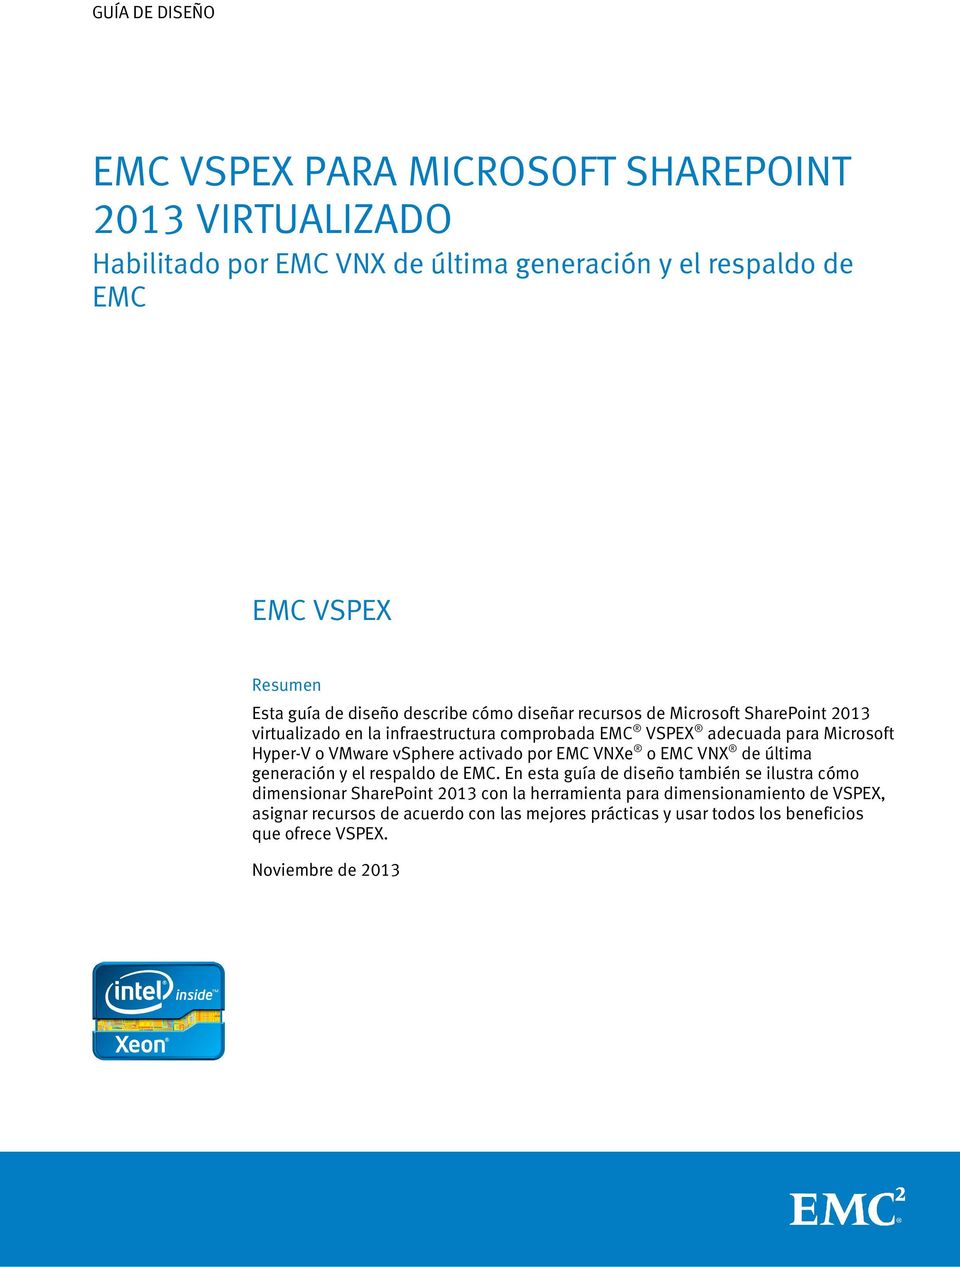 VMware vsphere activado por EMC VNXe o EMC VNX de última generación y el respaldo de EMC.